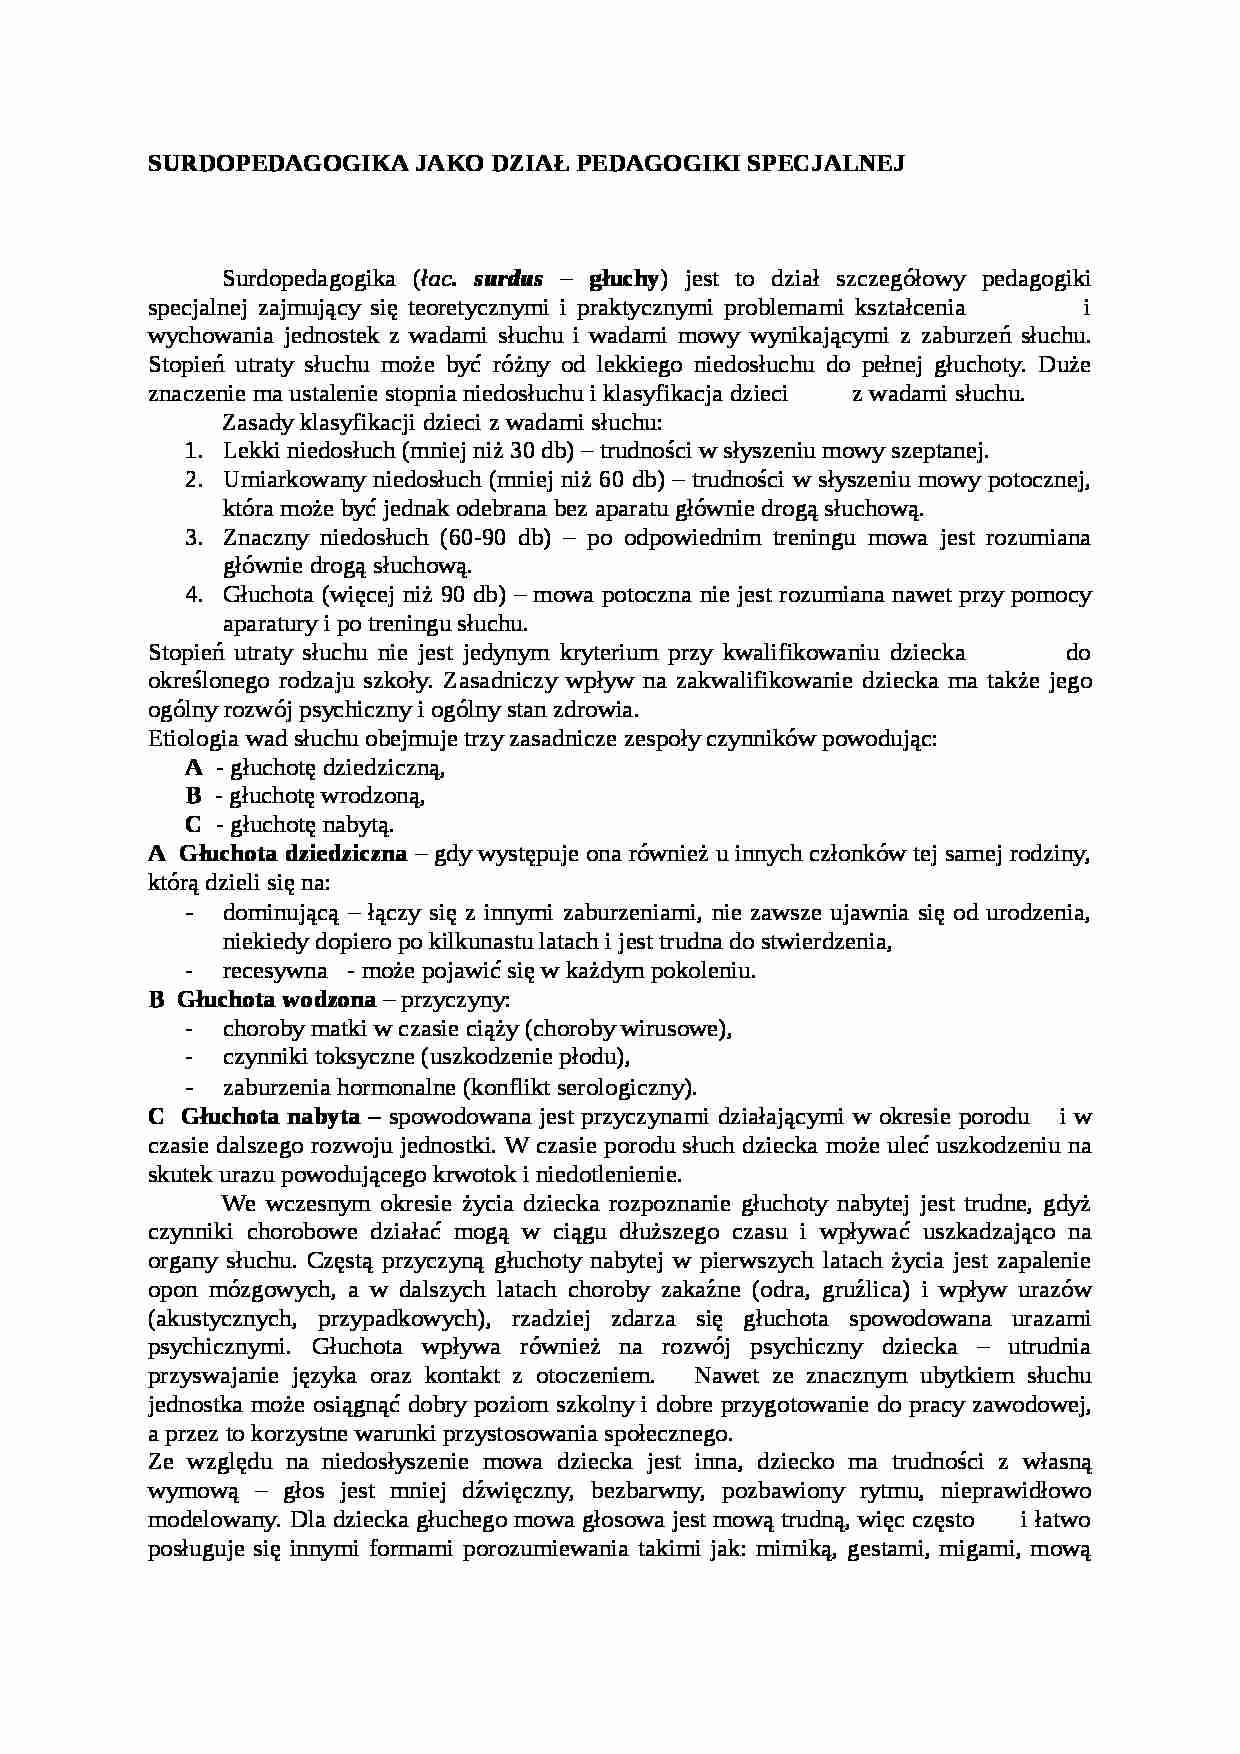 Surdopedagogika-dział pedagogiki specjalnej - strona 1